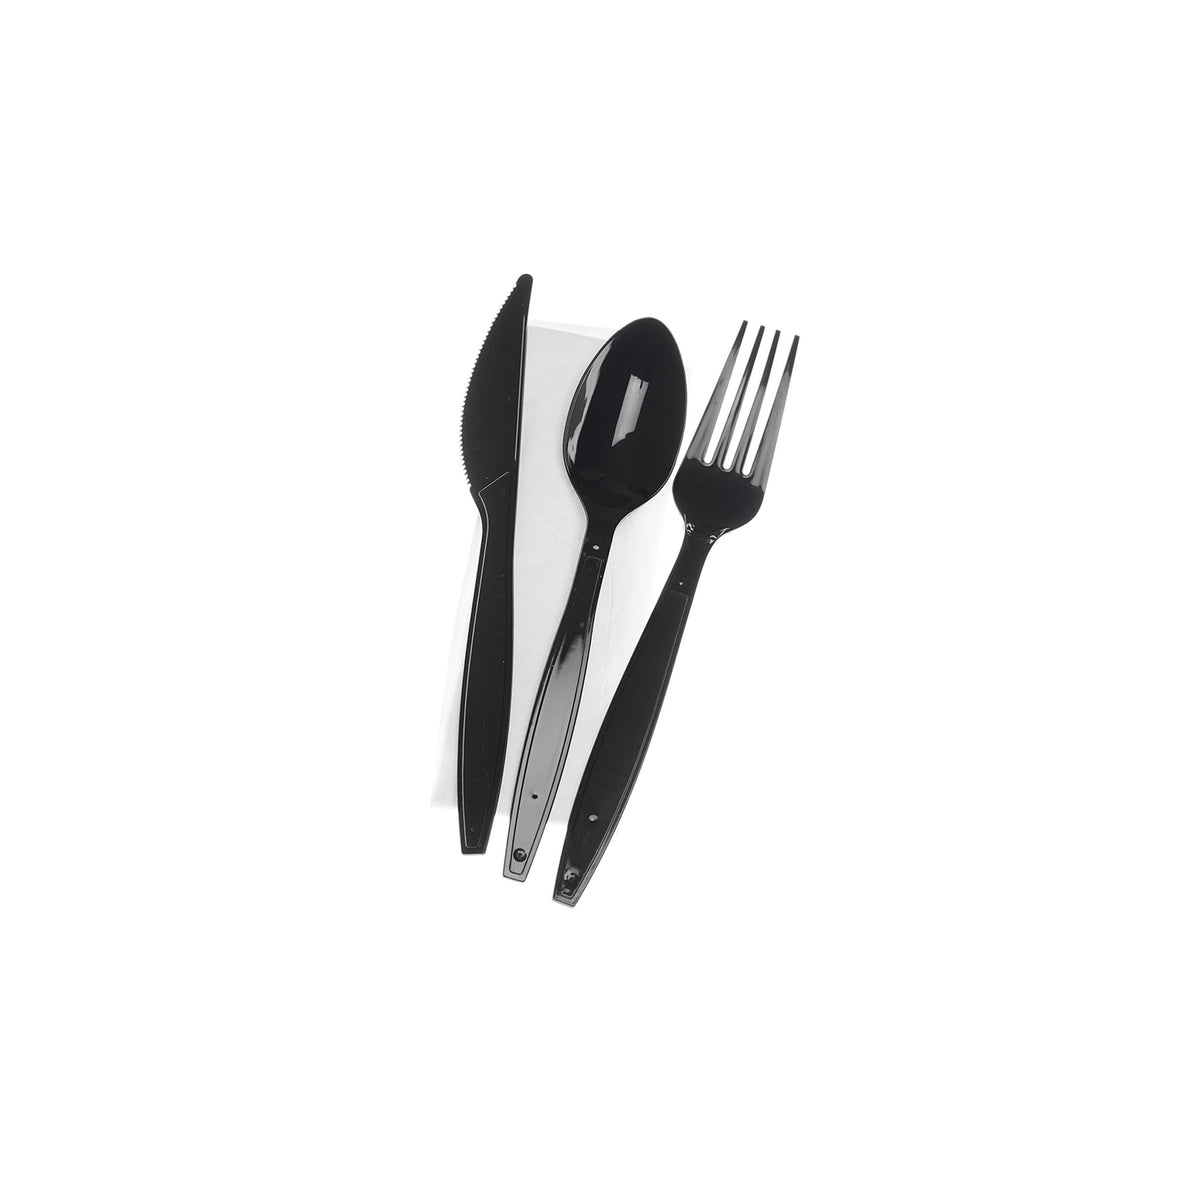  Heavy Duty Black Cutlery Set (Spoon/Fork/Knife/Napkin)